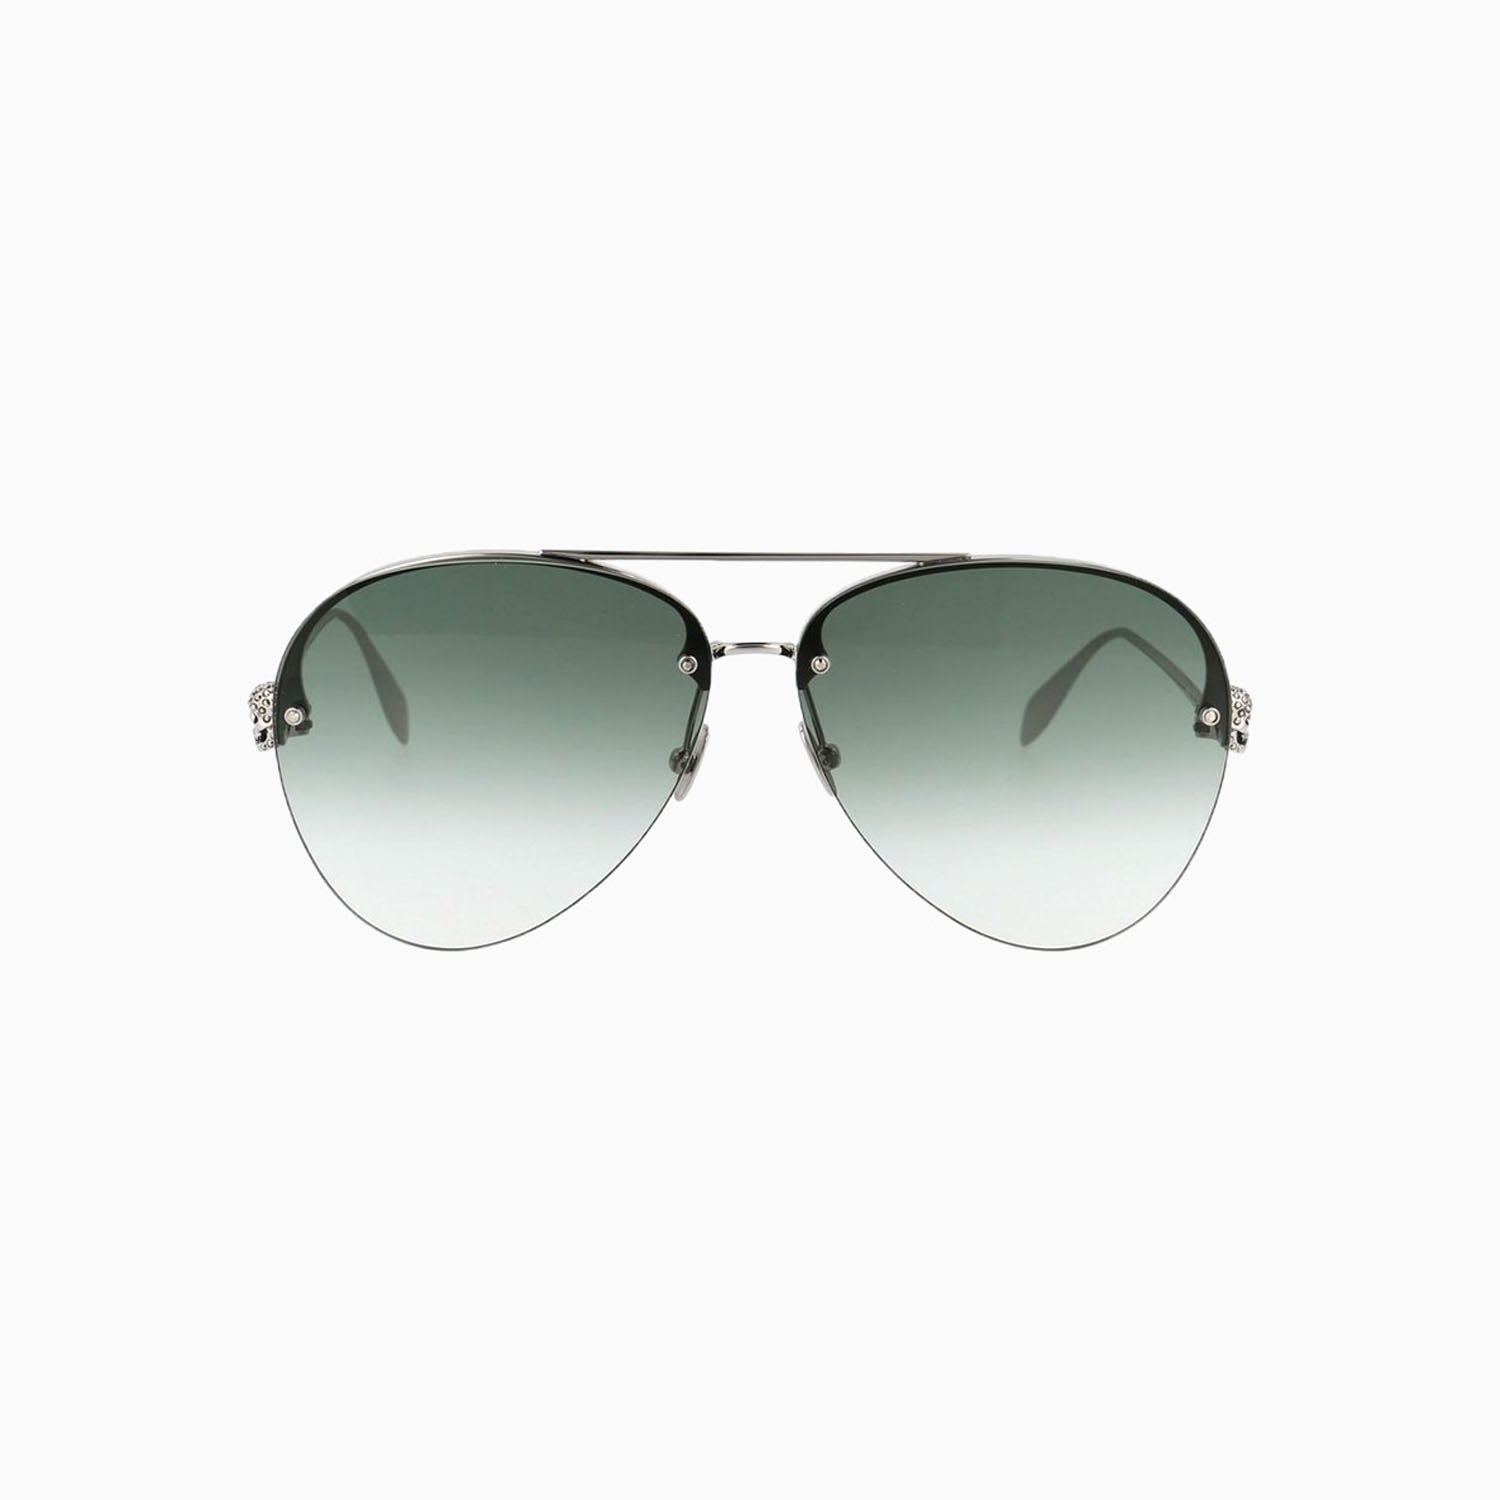 alexander-mcqueen-silver-green-sunglasses-am0270s-003